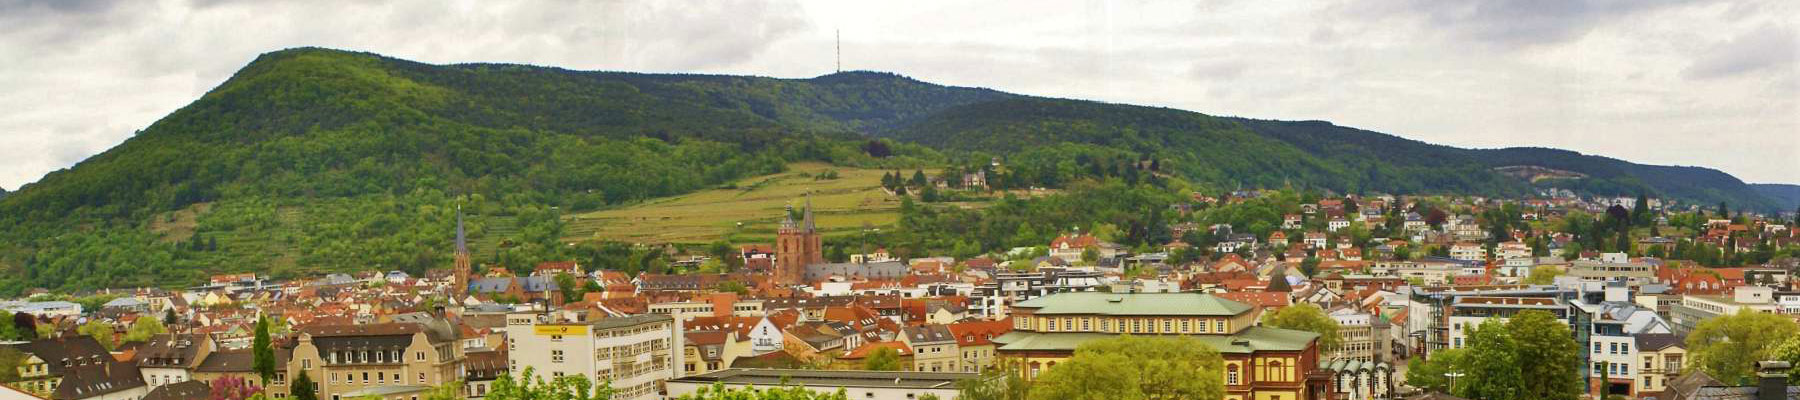 Ferienwohnungen - Sehnke Neustadt an der Weinstrasse - Ferienwohnung Hohenzollern